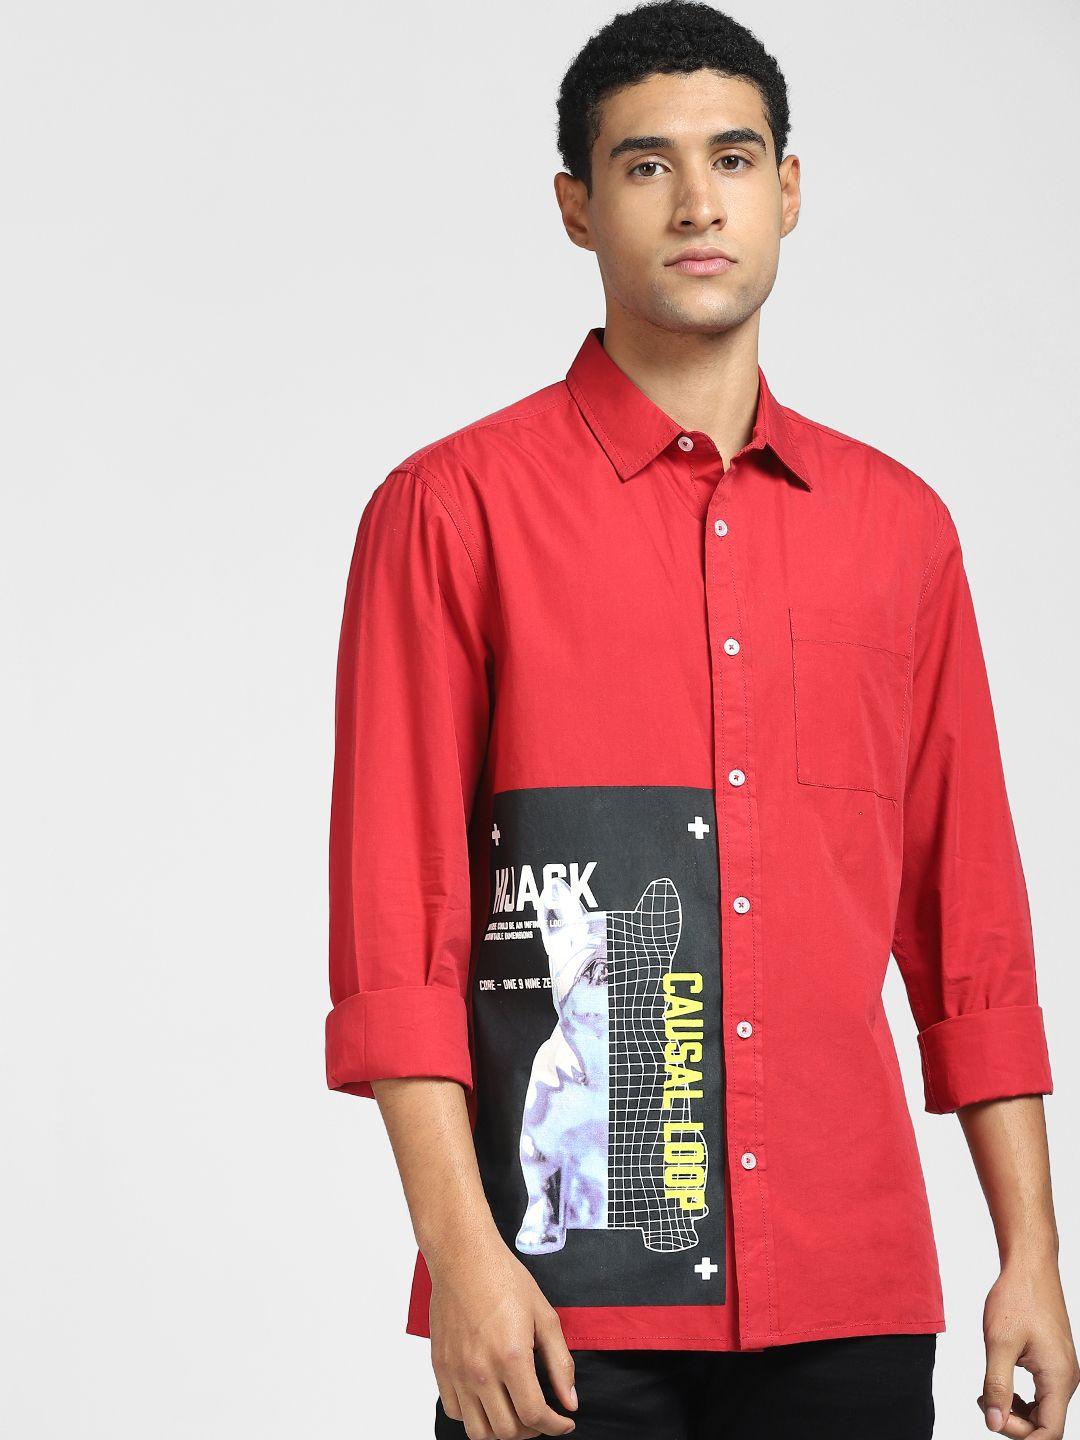 jack & jones men red & black printed casual shirt